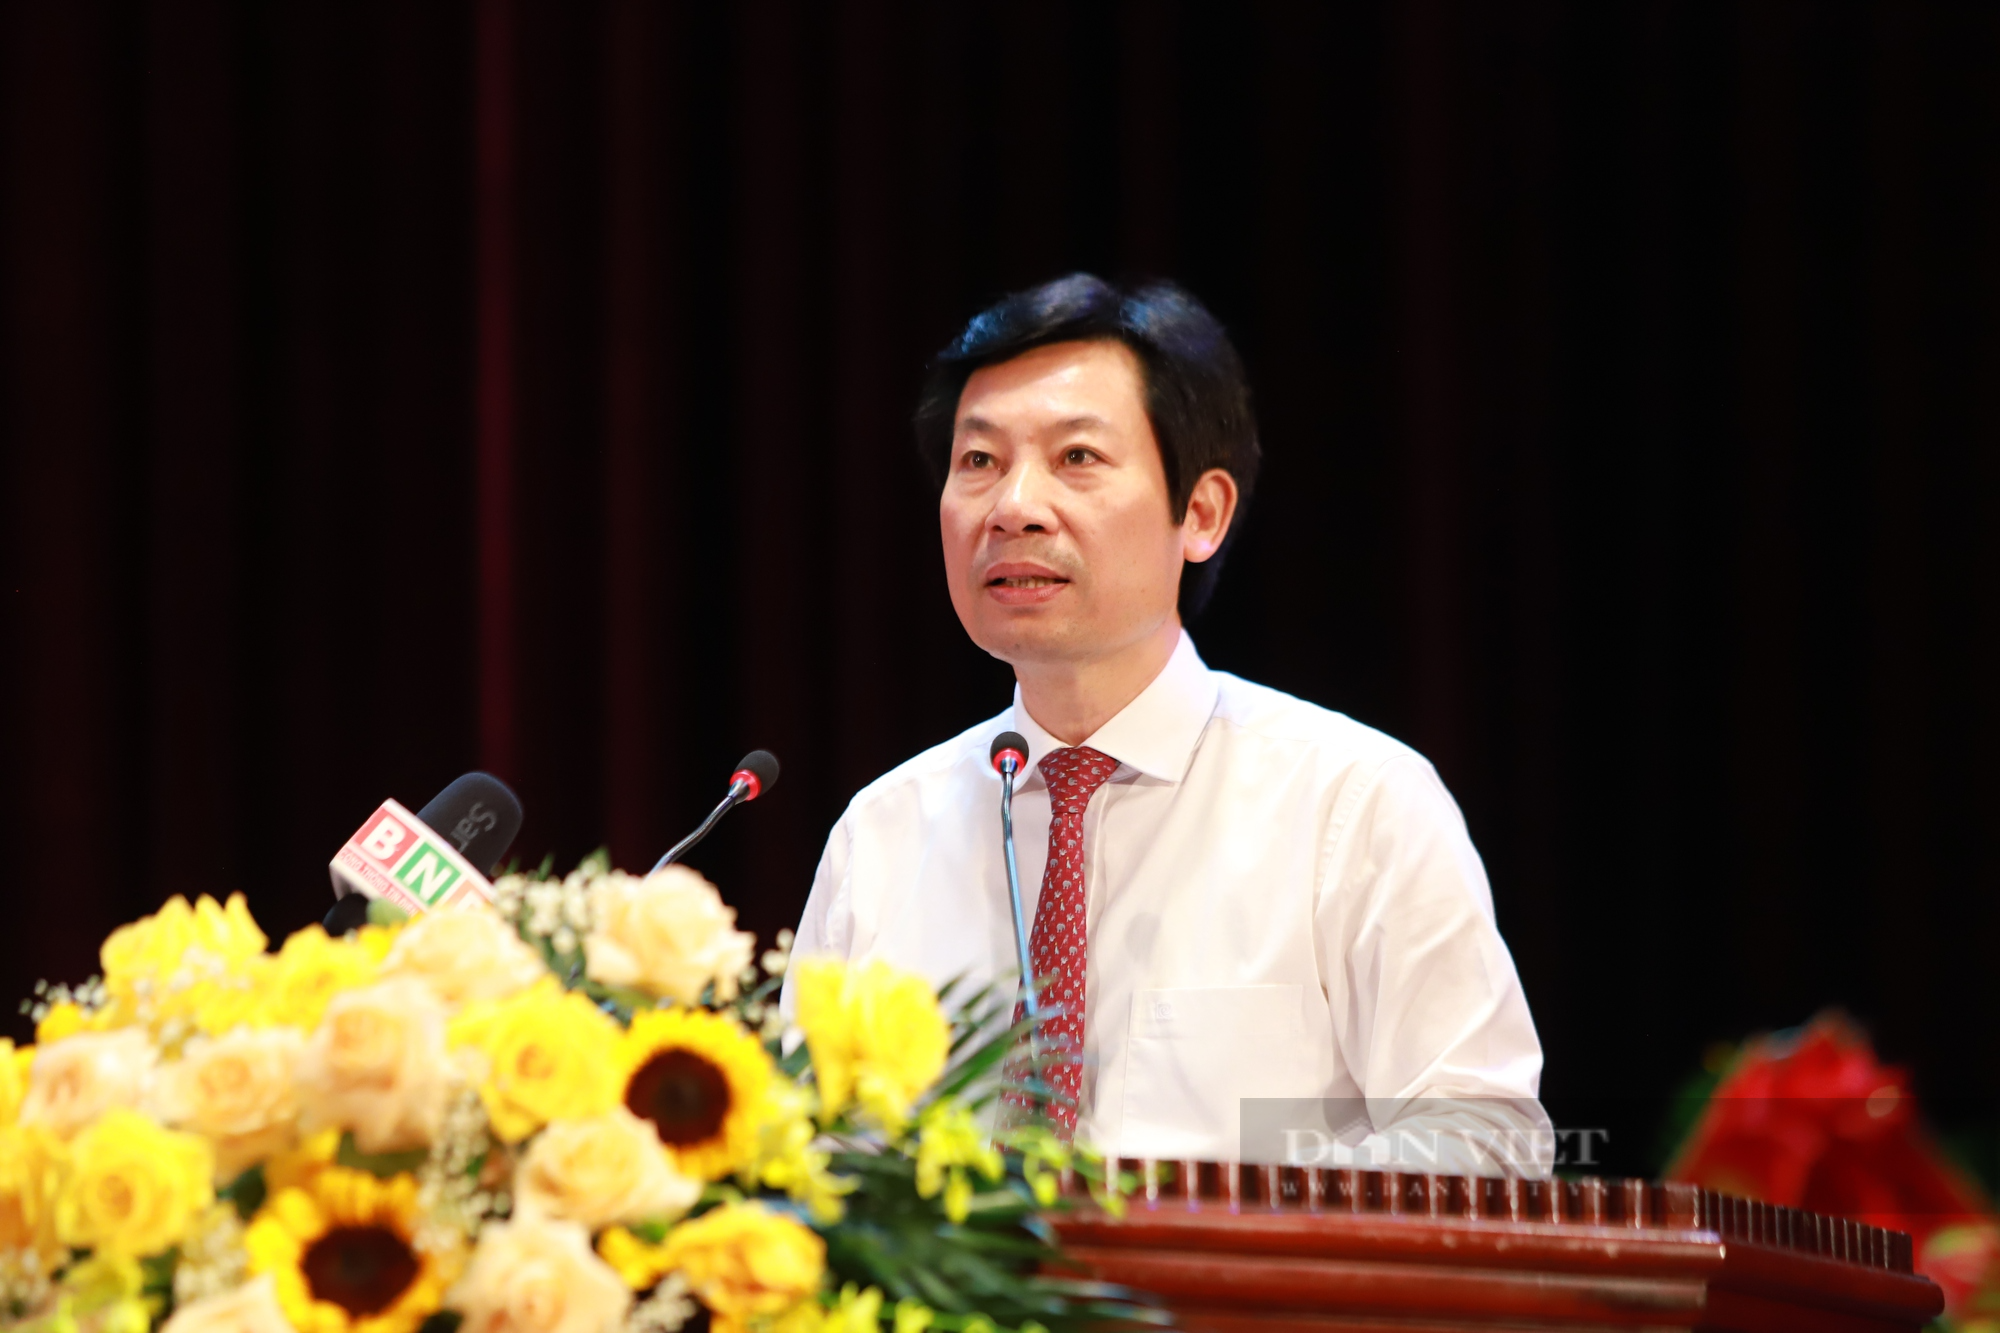 Phó chủ tịch Hội NDVN Nguyễn Xuân Định gợi mở 5 vấn đề tại Đại hội đại biểu Hội Nông dân tỉnh Bắc Ninh - Ảnh 5.